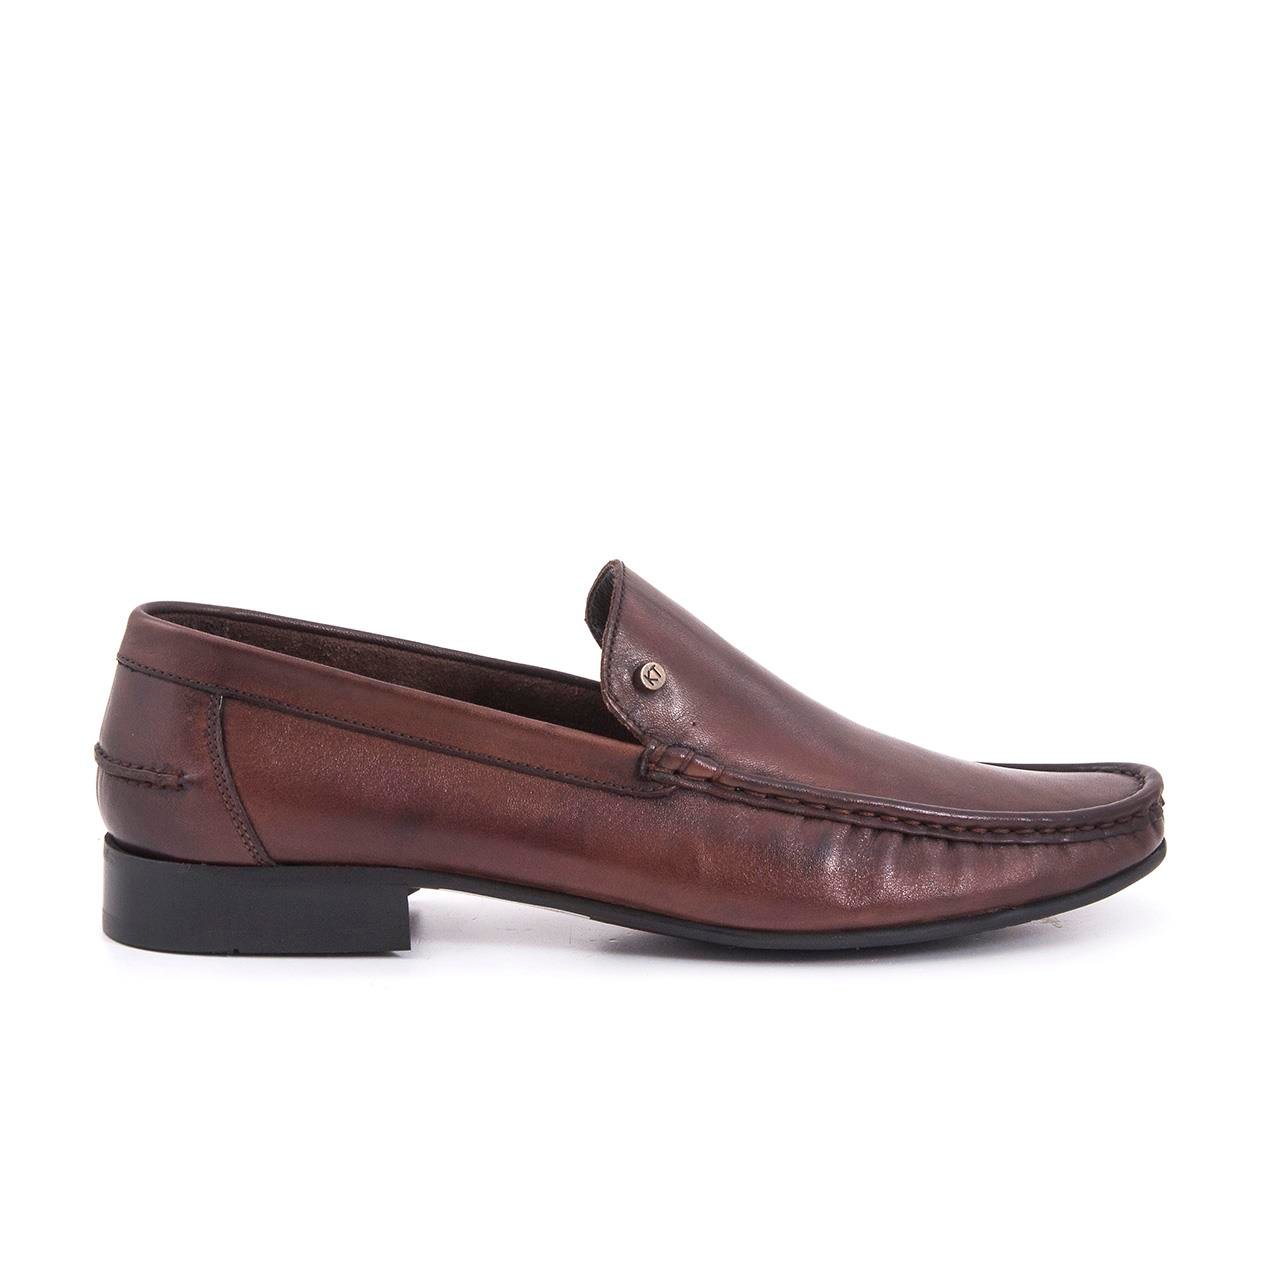 Kemal Tanca Men's Leather Loafer